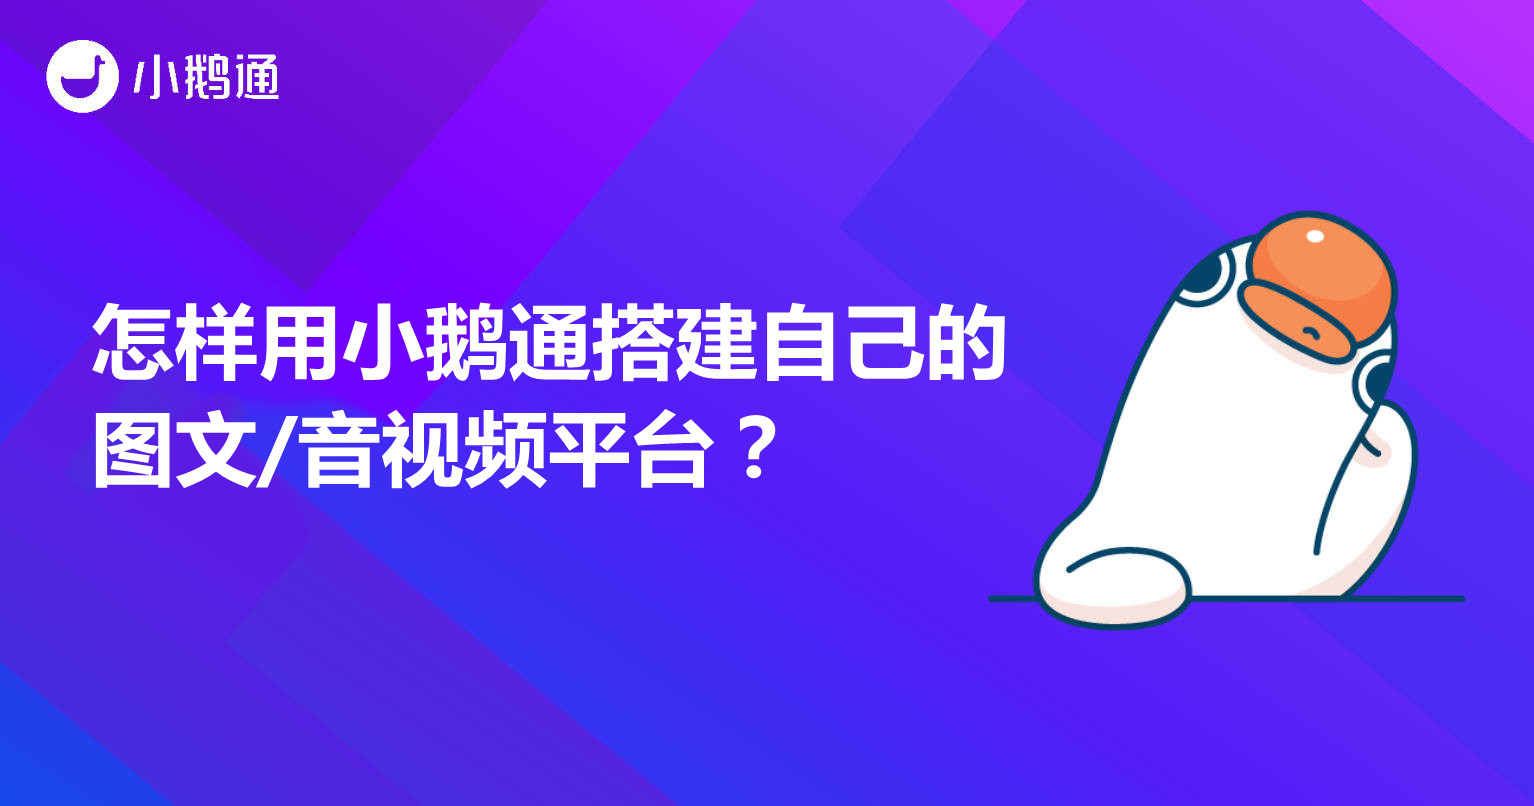 上海怎样用小鹅通搭建自己的图文/音视频平台？